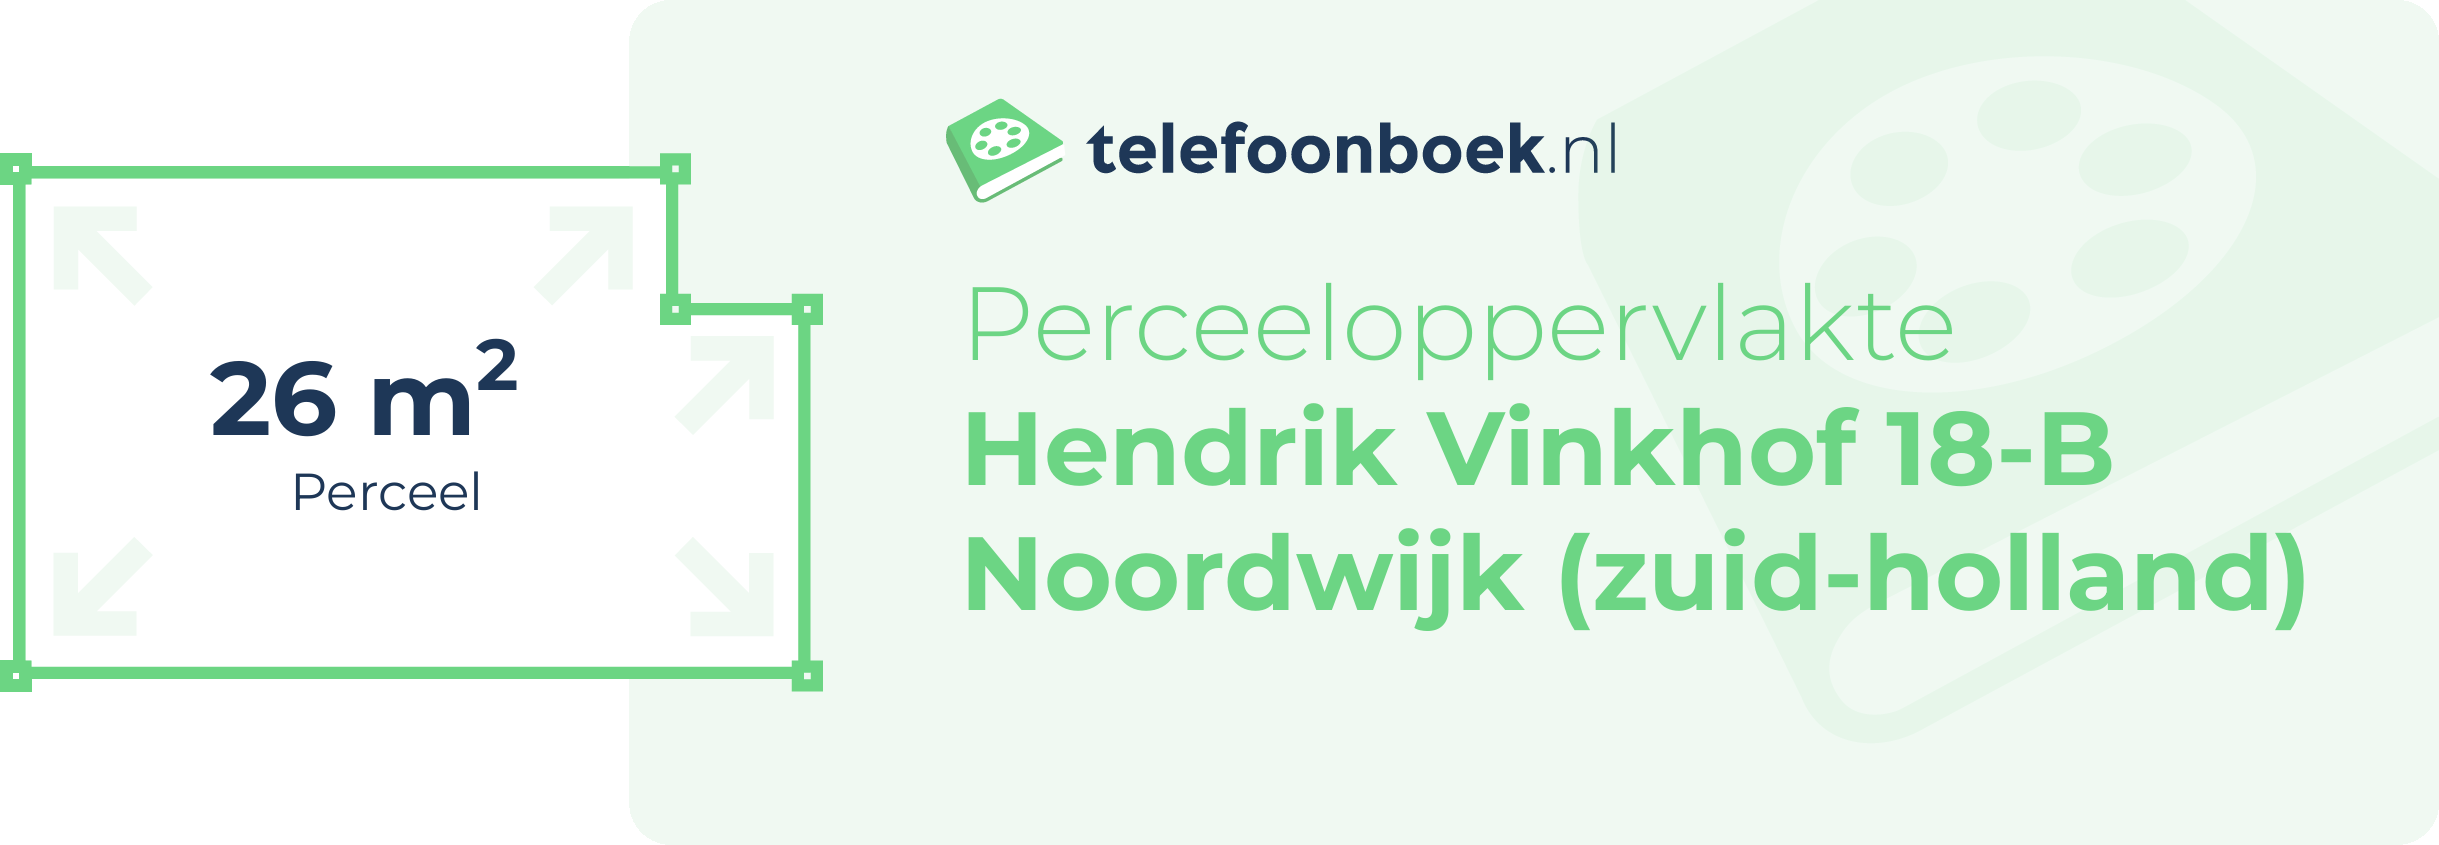 Perceeloppervlakte Hendrik Vinkhof 18-B Noordwijk (Zuid-Holland)